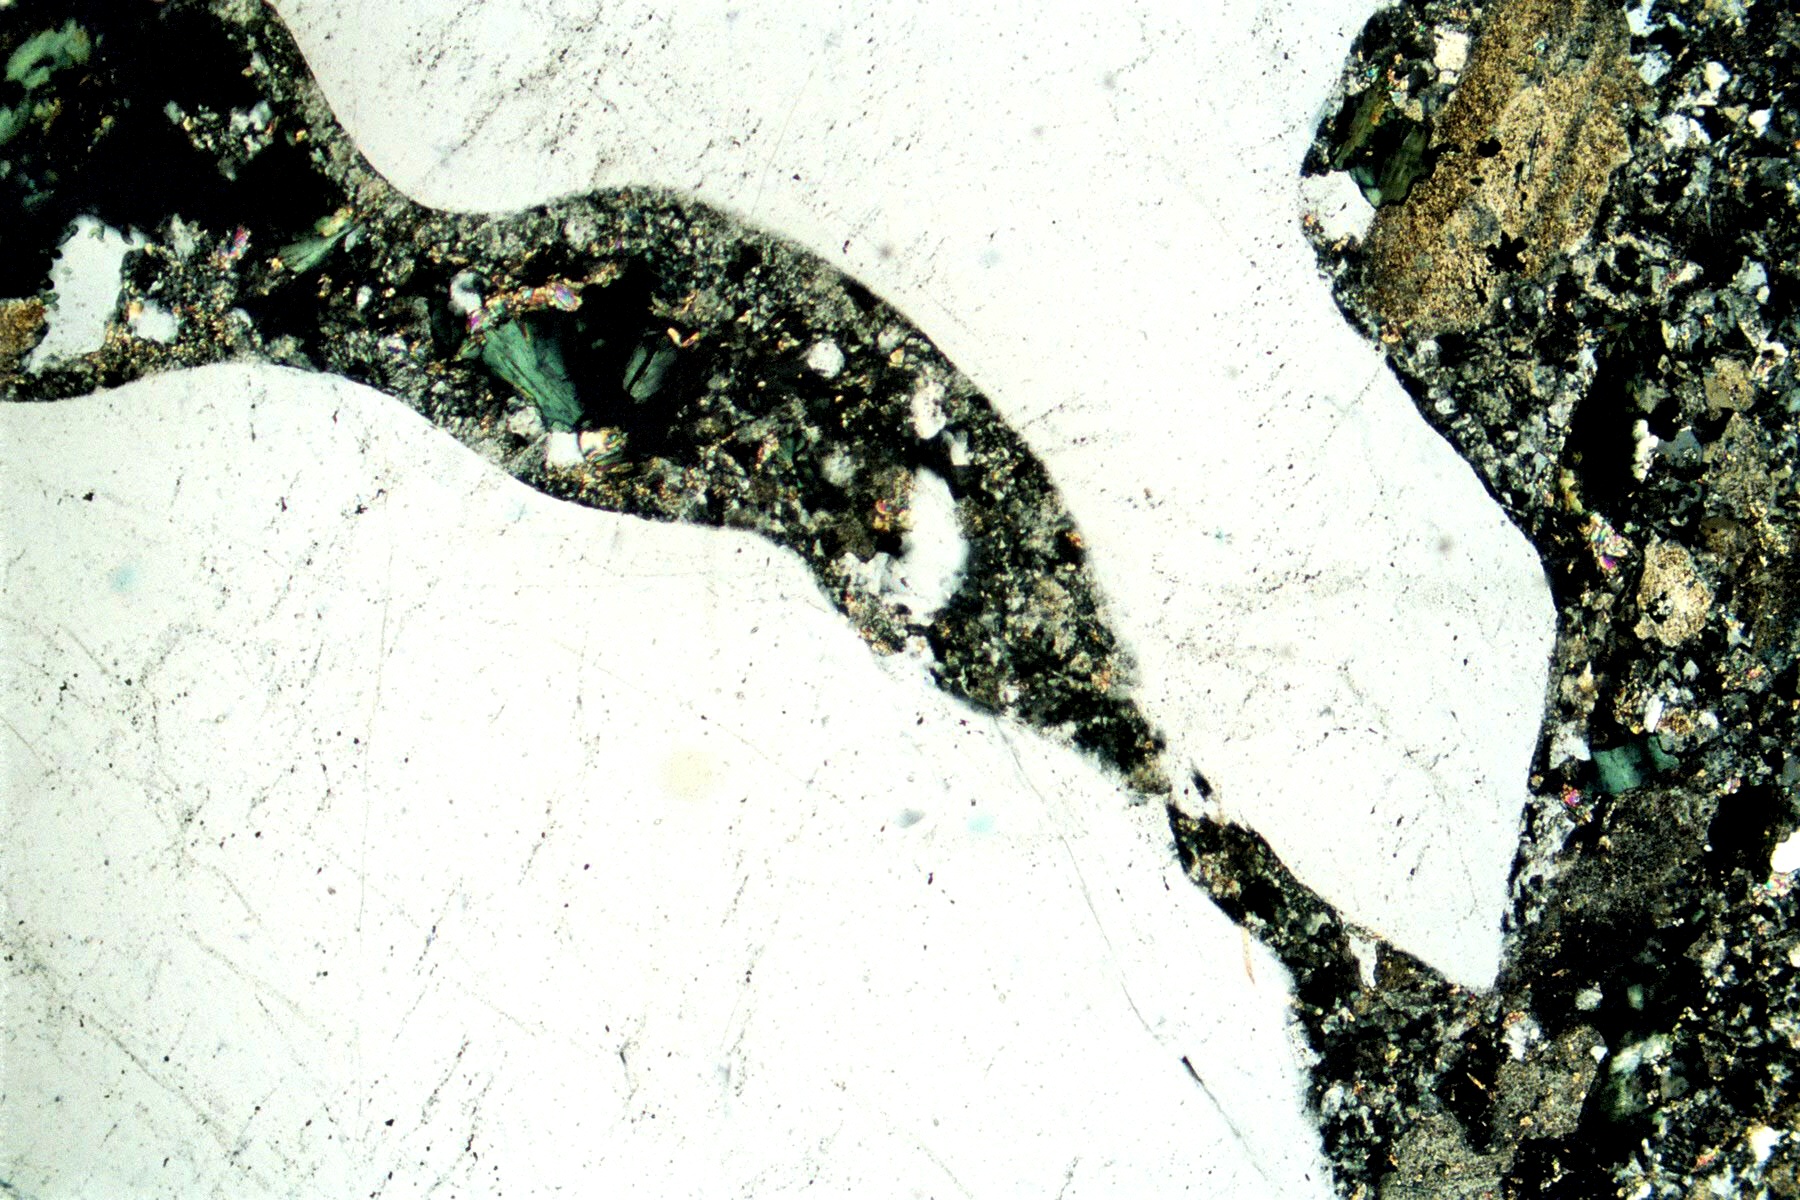 i1 : Ryolith  | Alter ca. 290 Mio. Jahre | Lokalität: Riu Premaera (Lotzorei) Ostküste Sardinien